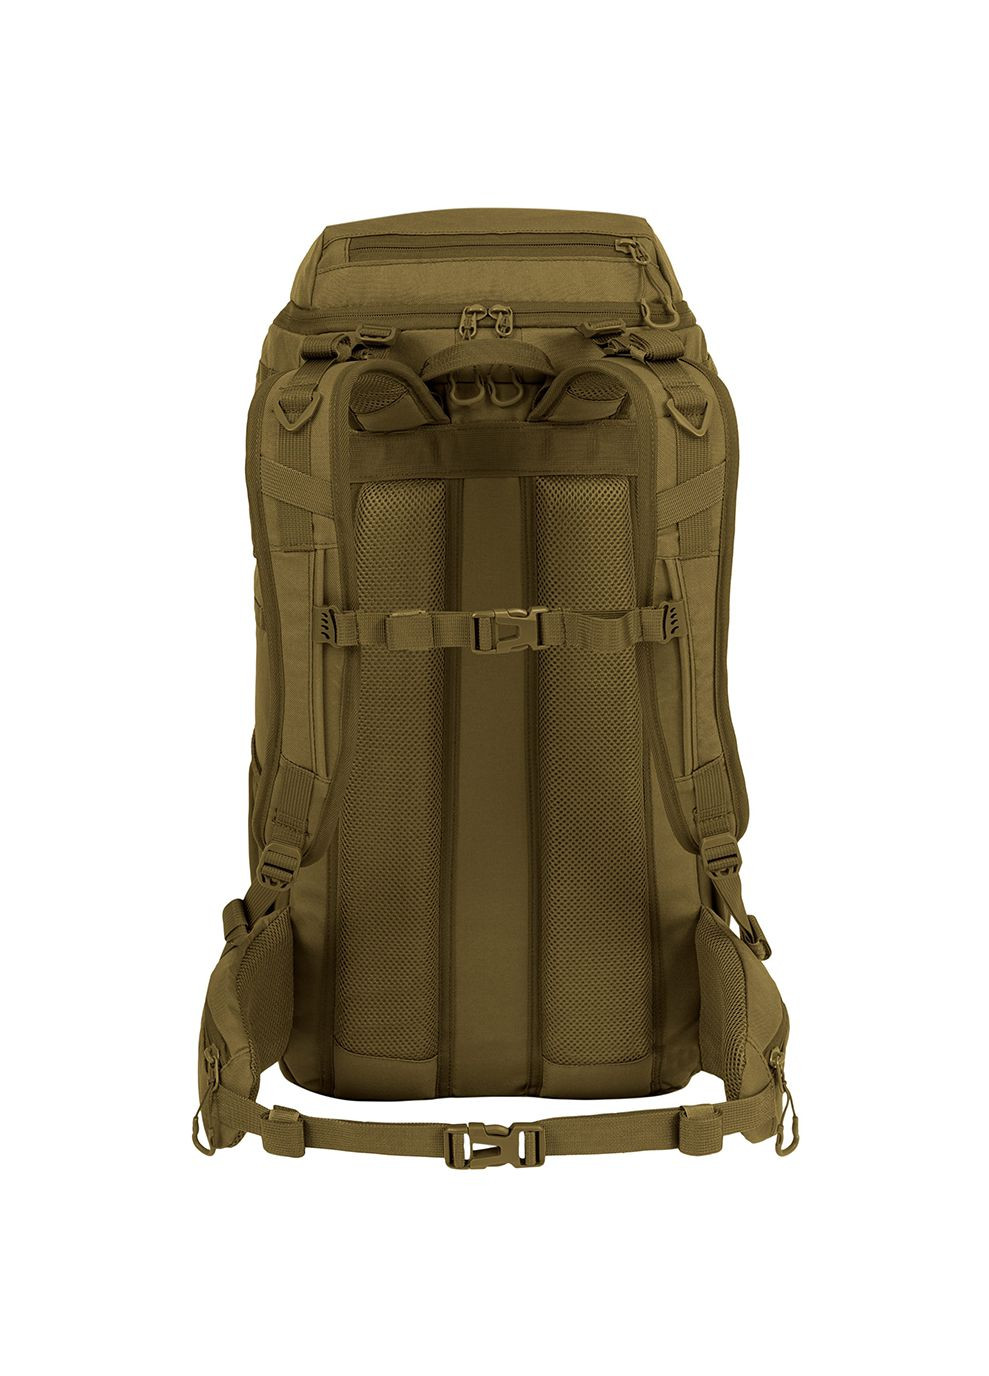 Рюкзак тактический Eagle 3 Backpack 40L Coyote Tan Highlander (268831755)